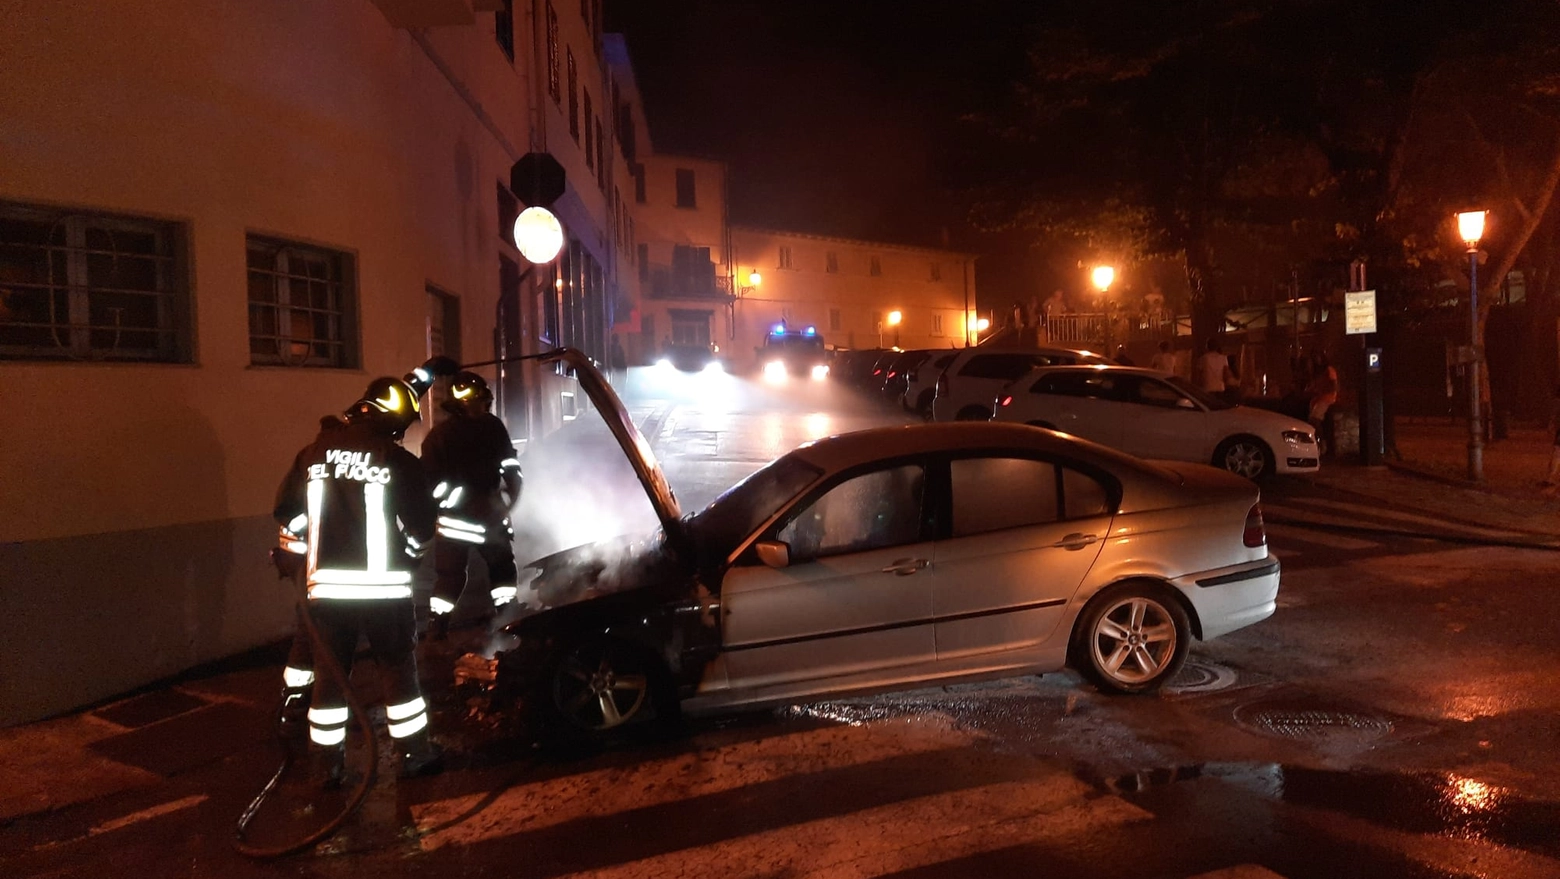 L'auto andata a fuoco (foto Taddei/Fotocronache Germogli)